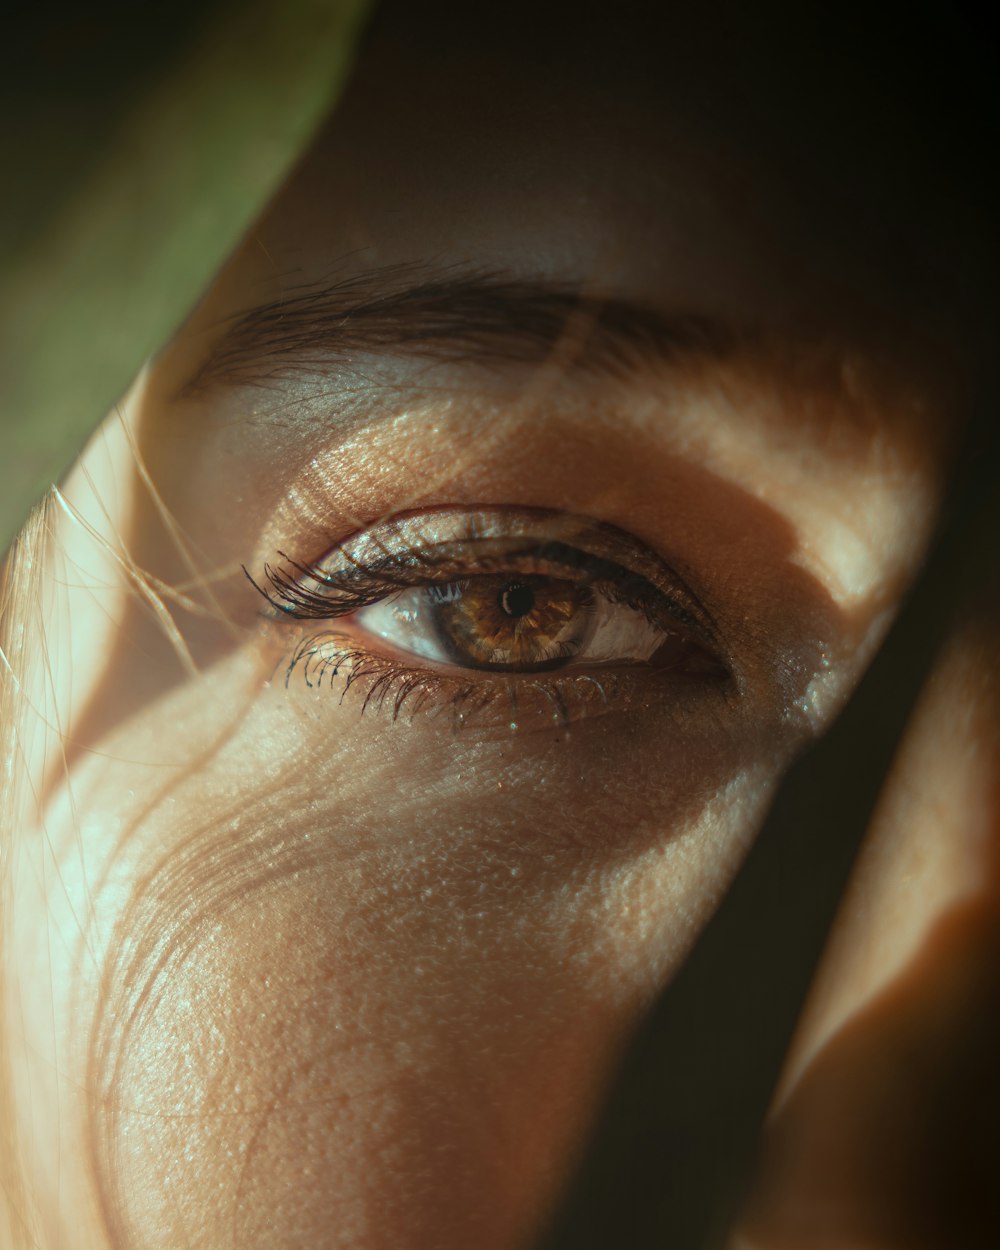 Un primer plano del ojo de una persona con un par de tijeras